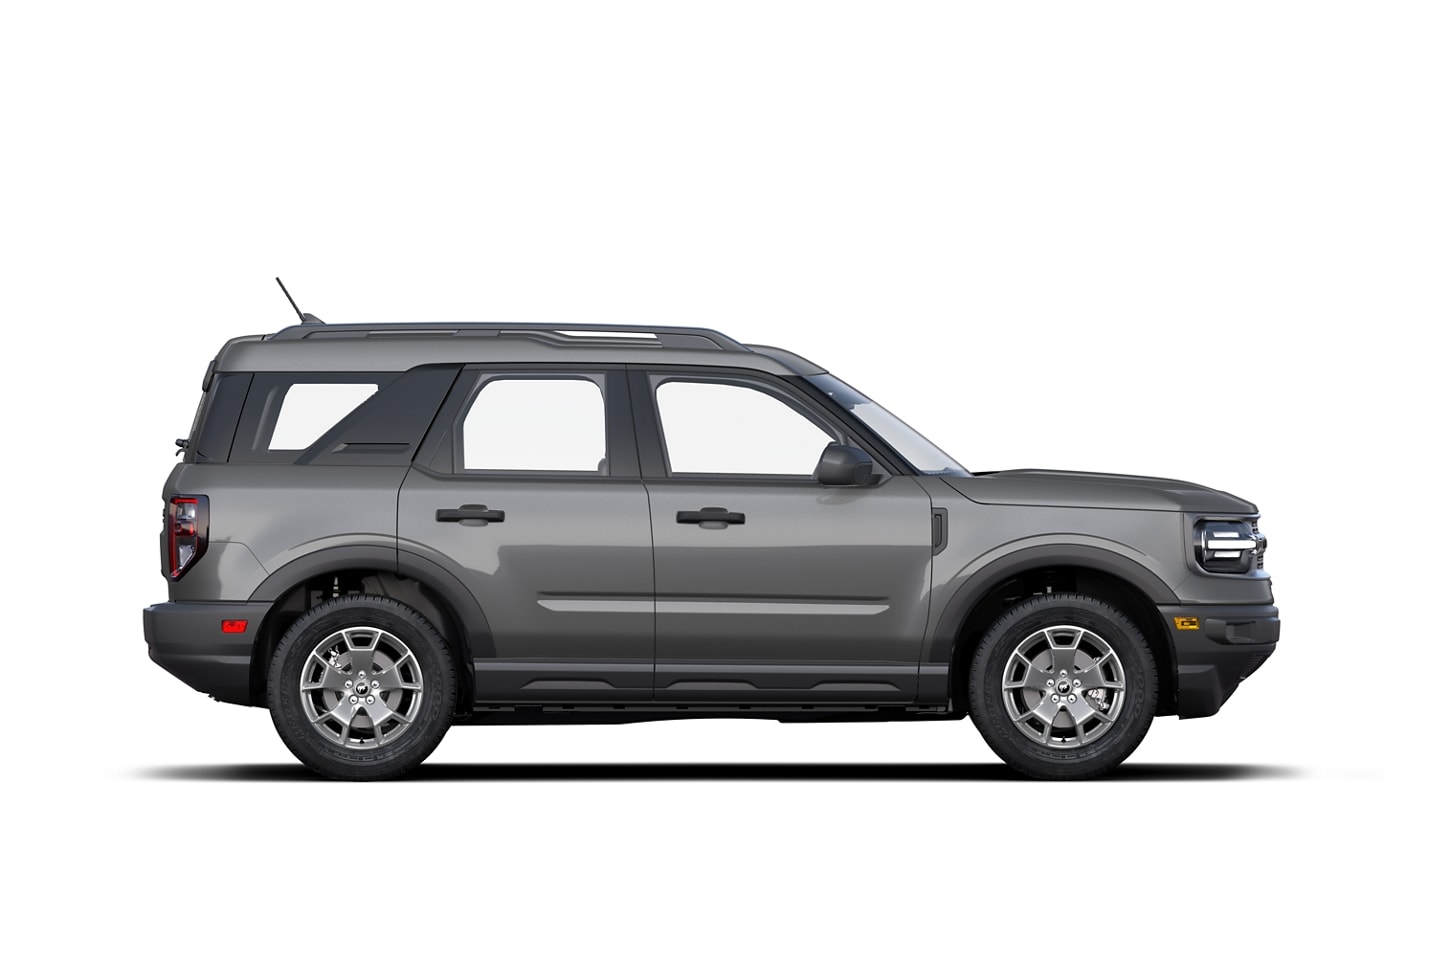 2022 Ford Bronco® Sport SUV | Pricing, Photos, Specs & More | Ford.com